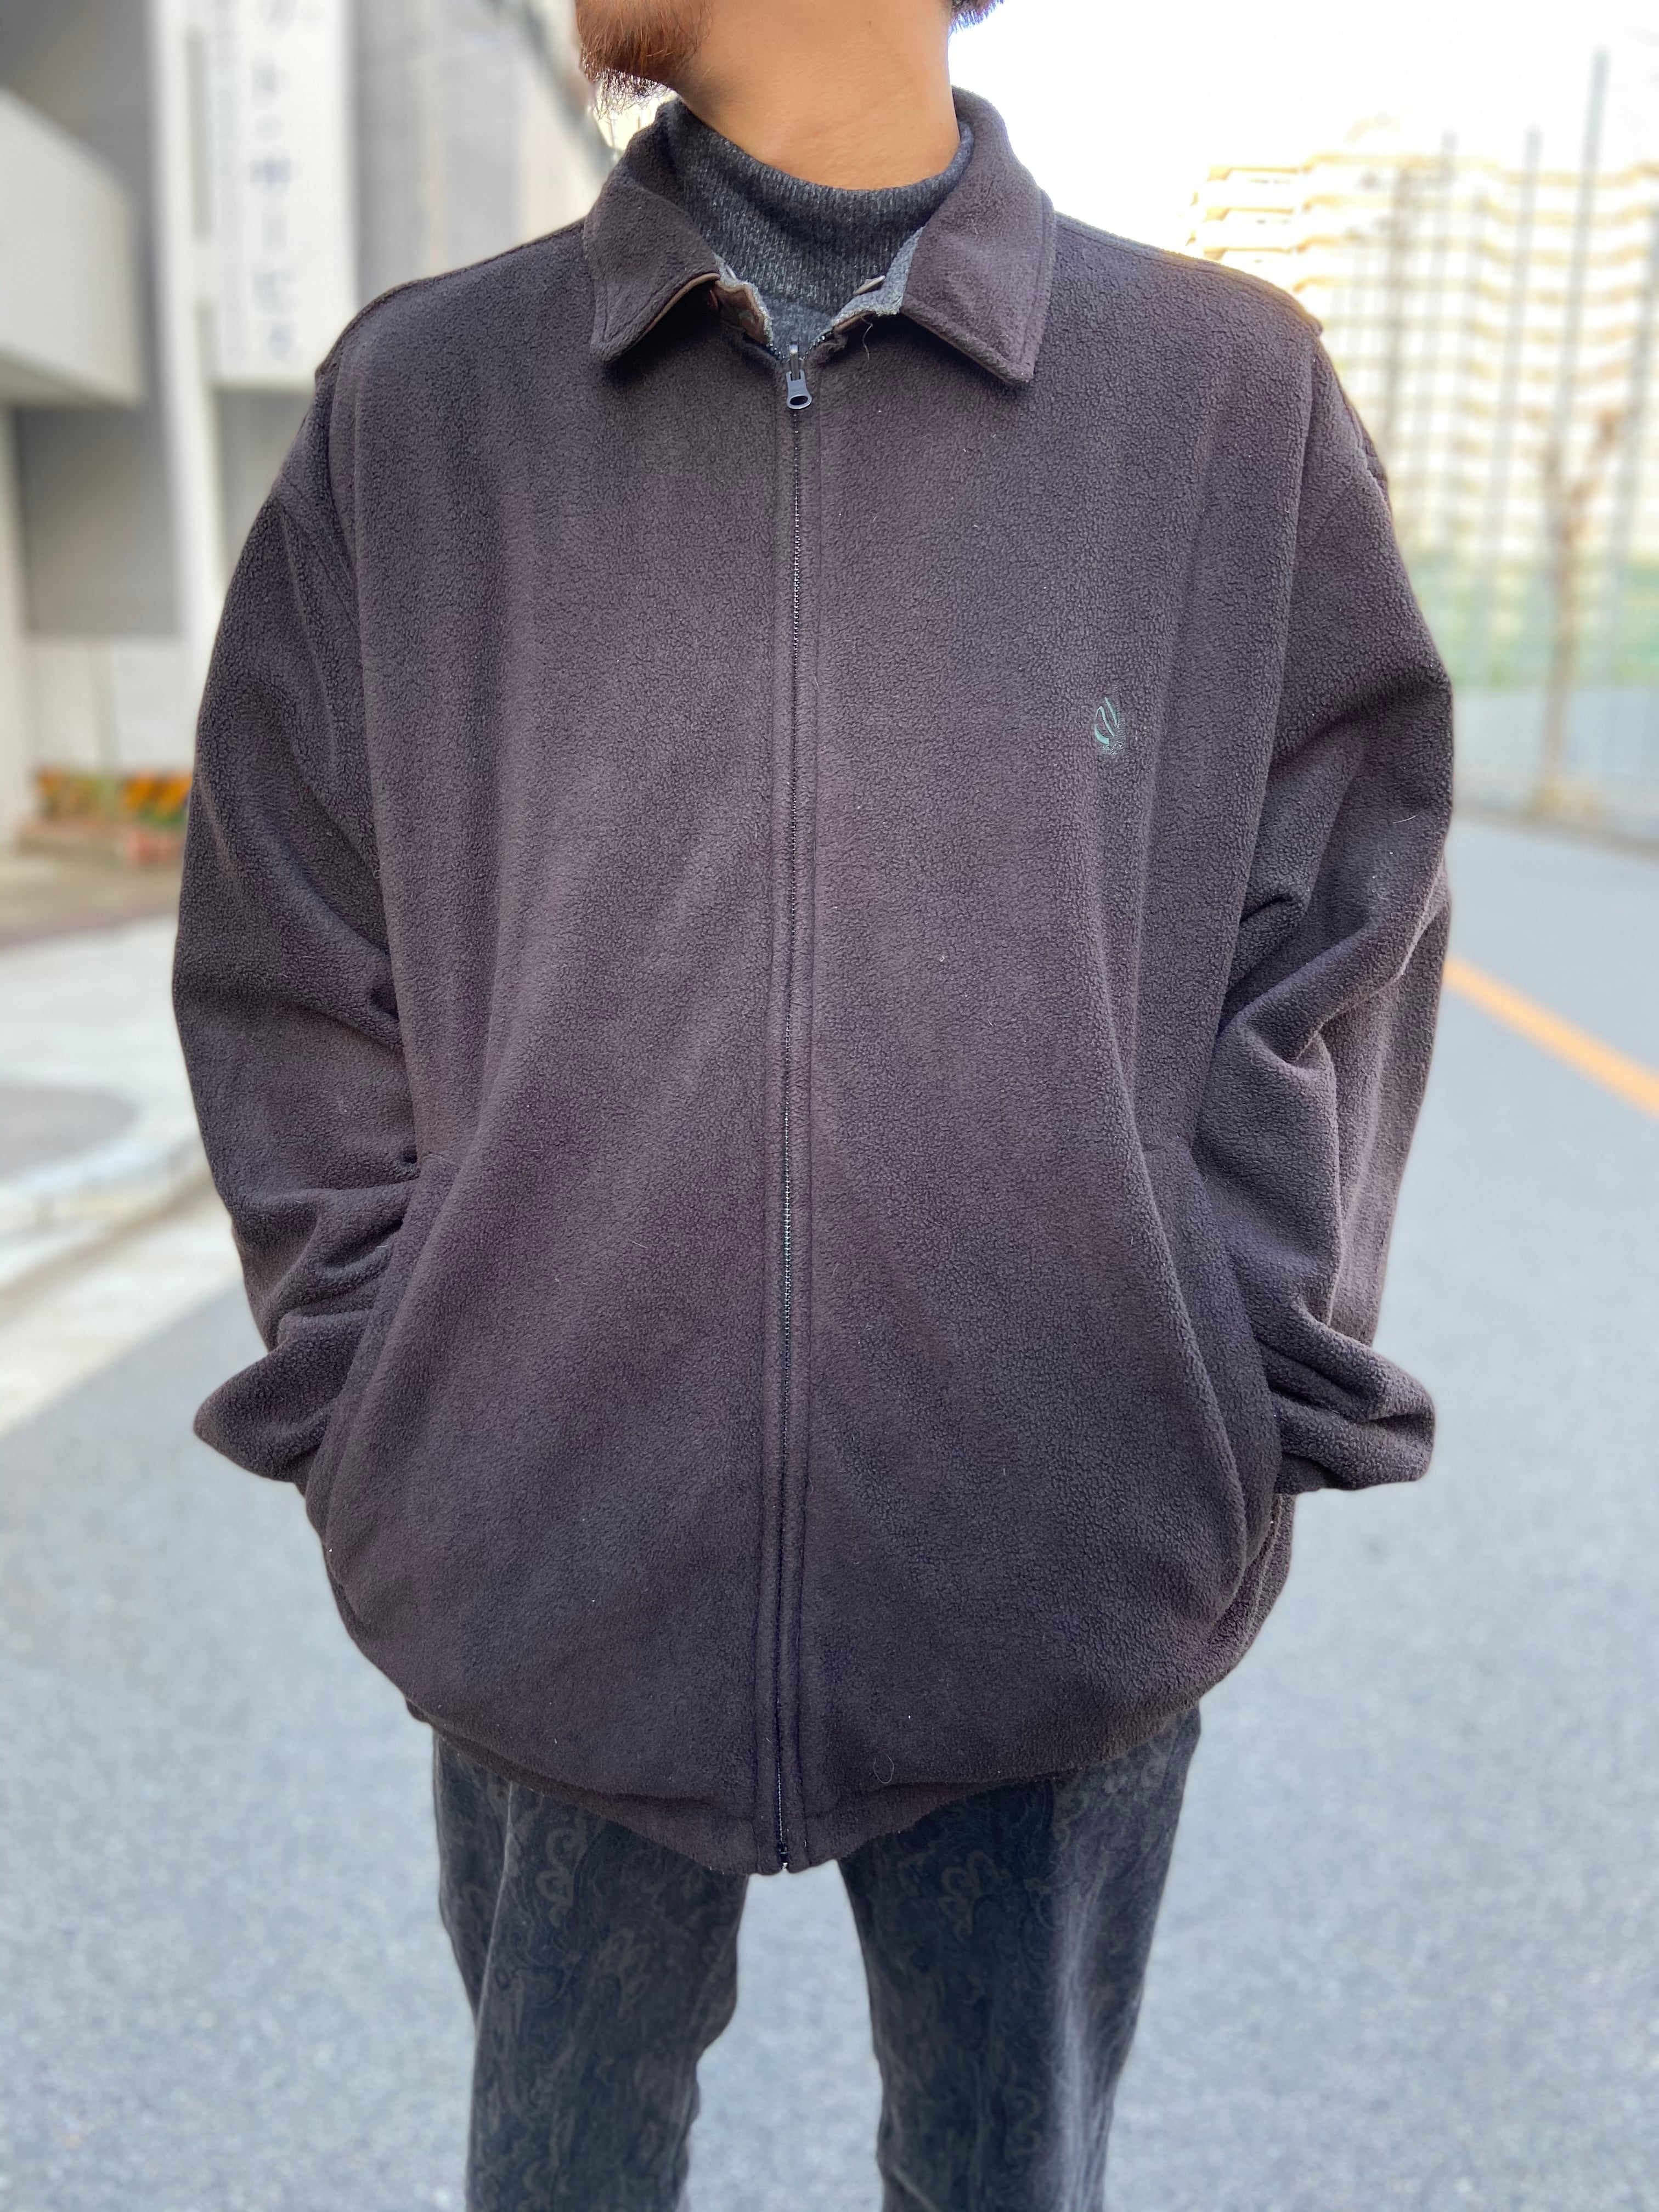 【90s ノーティカ】リバーシブル レザー襟 スウィングトップブルゾン フリース